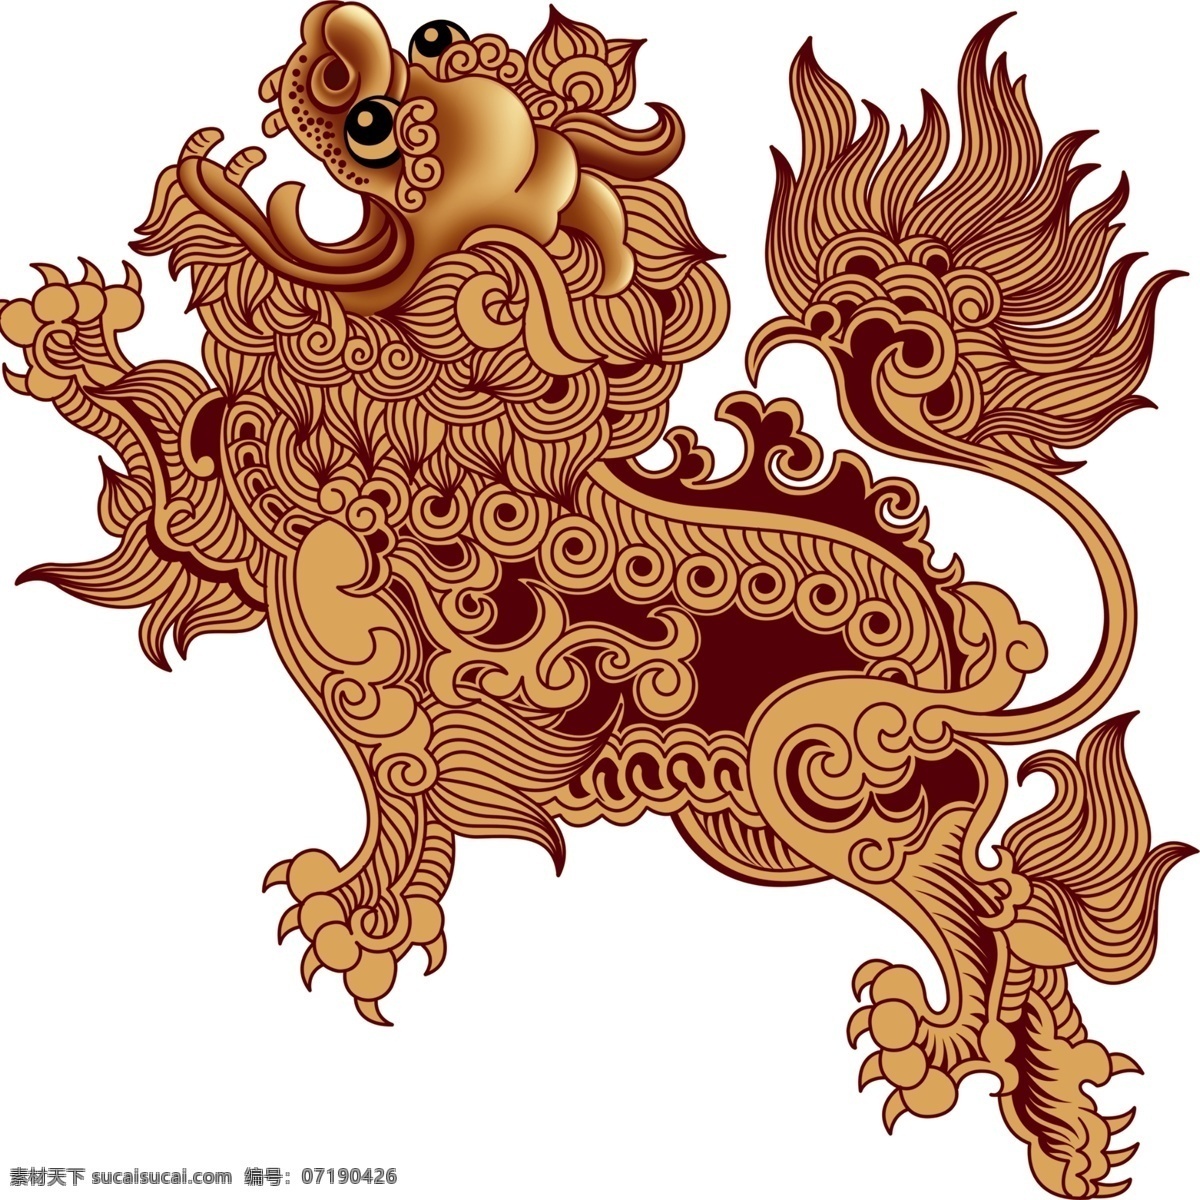 中国 传统 元素 神 兽 传统元素 神兽 中国风 传统文化